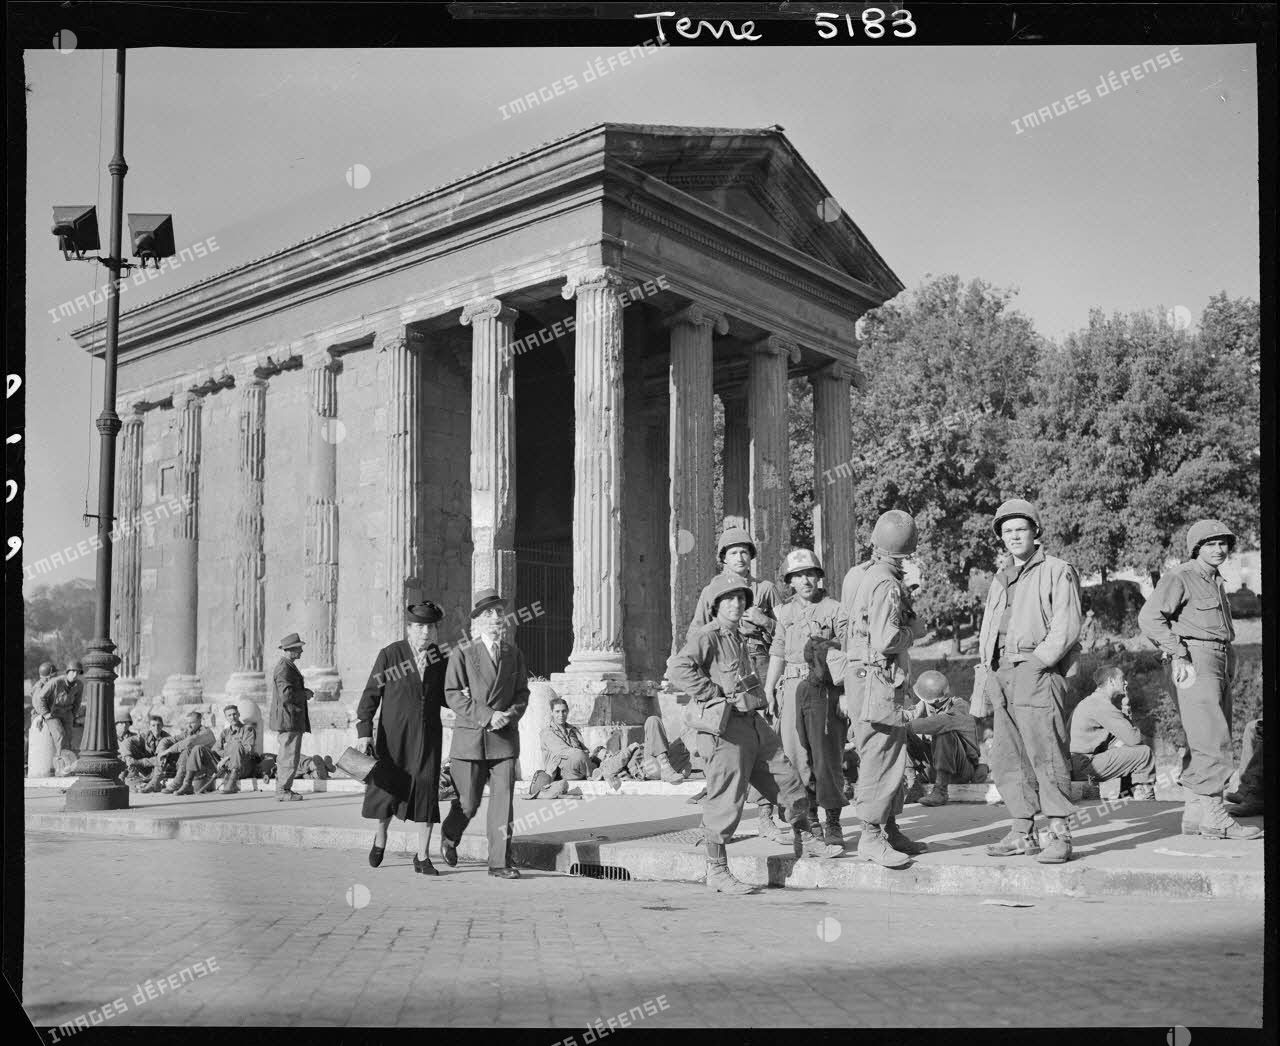 Des fantassins américains de la 34th infantry division (division d'infanterie) font une halte devant le temple de Portunus dans Rome libérée.<br>